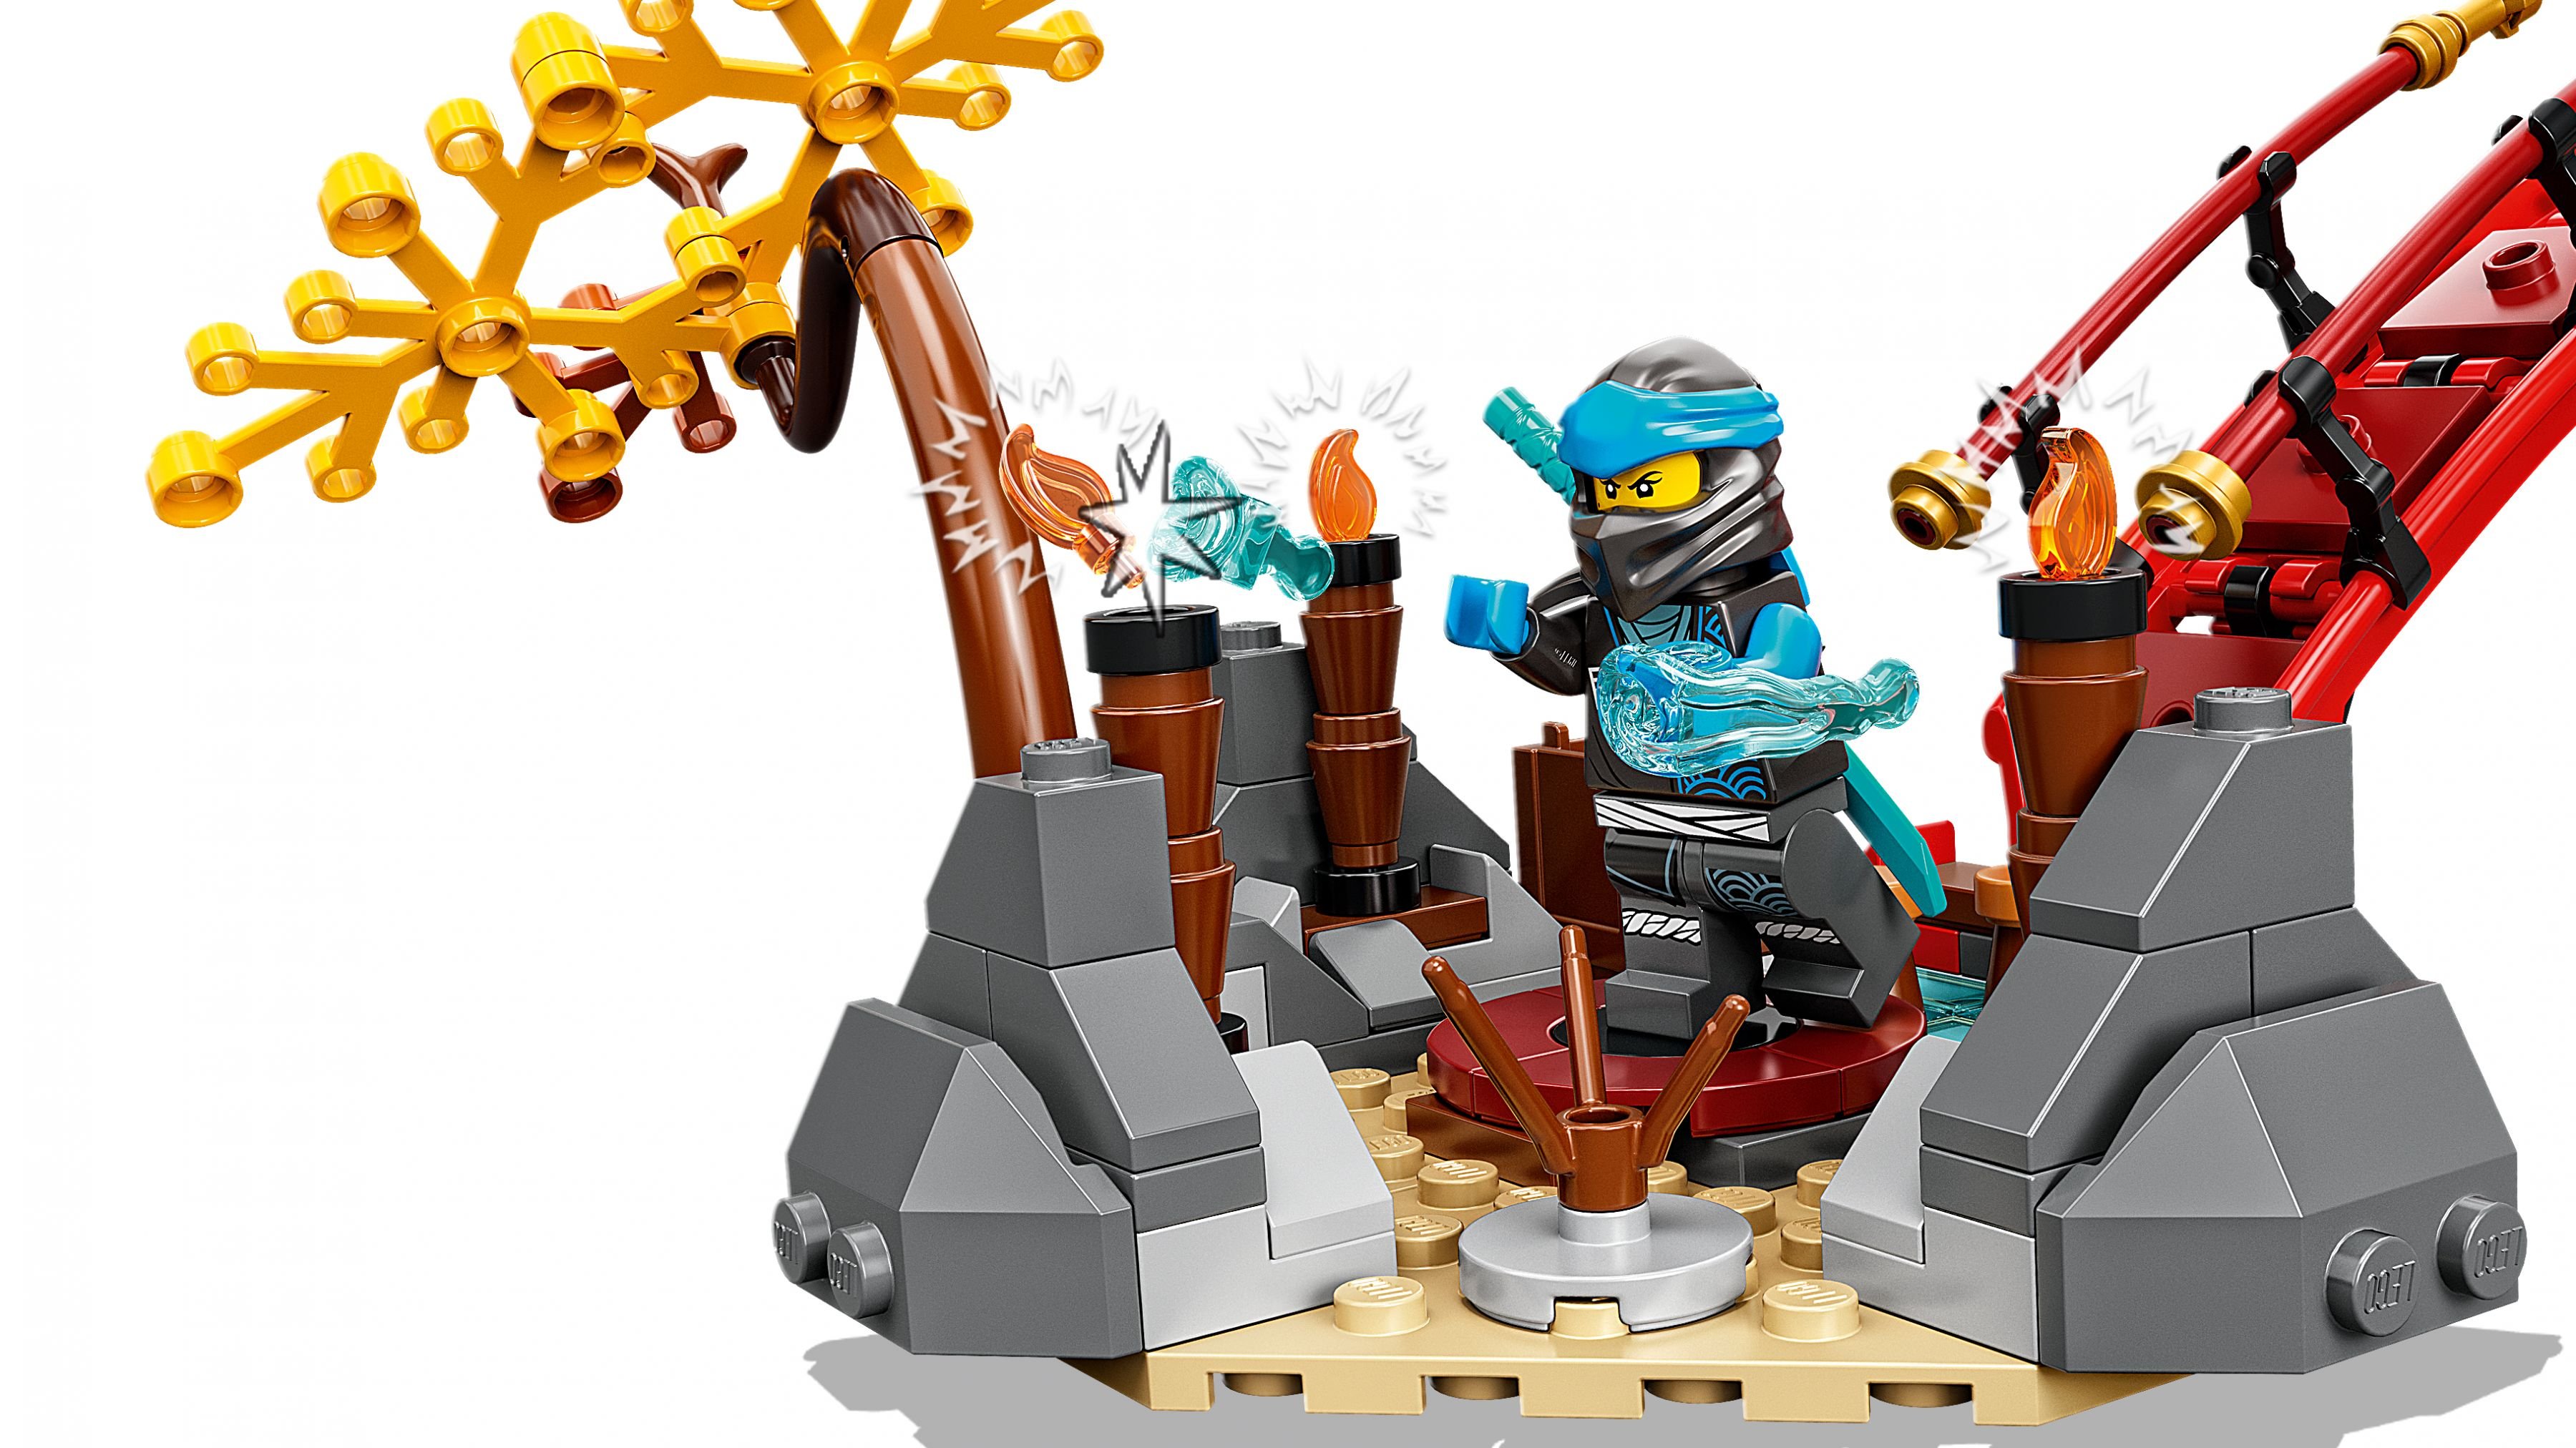 LEGO Ninjago 71767 Ninja-Dojotempel LEGO_71767_WEB_SEC03_NOBG.jpg